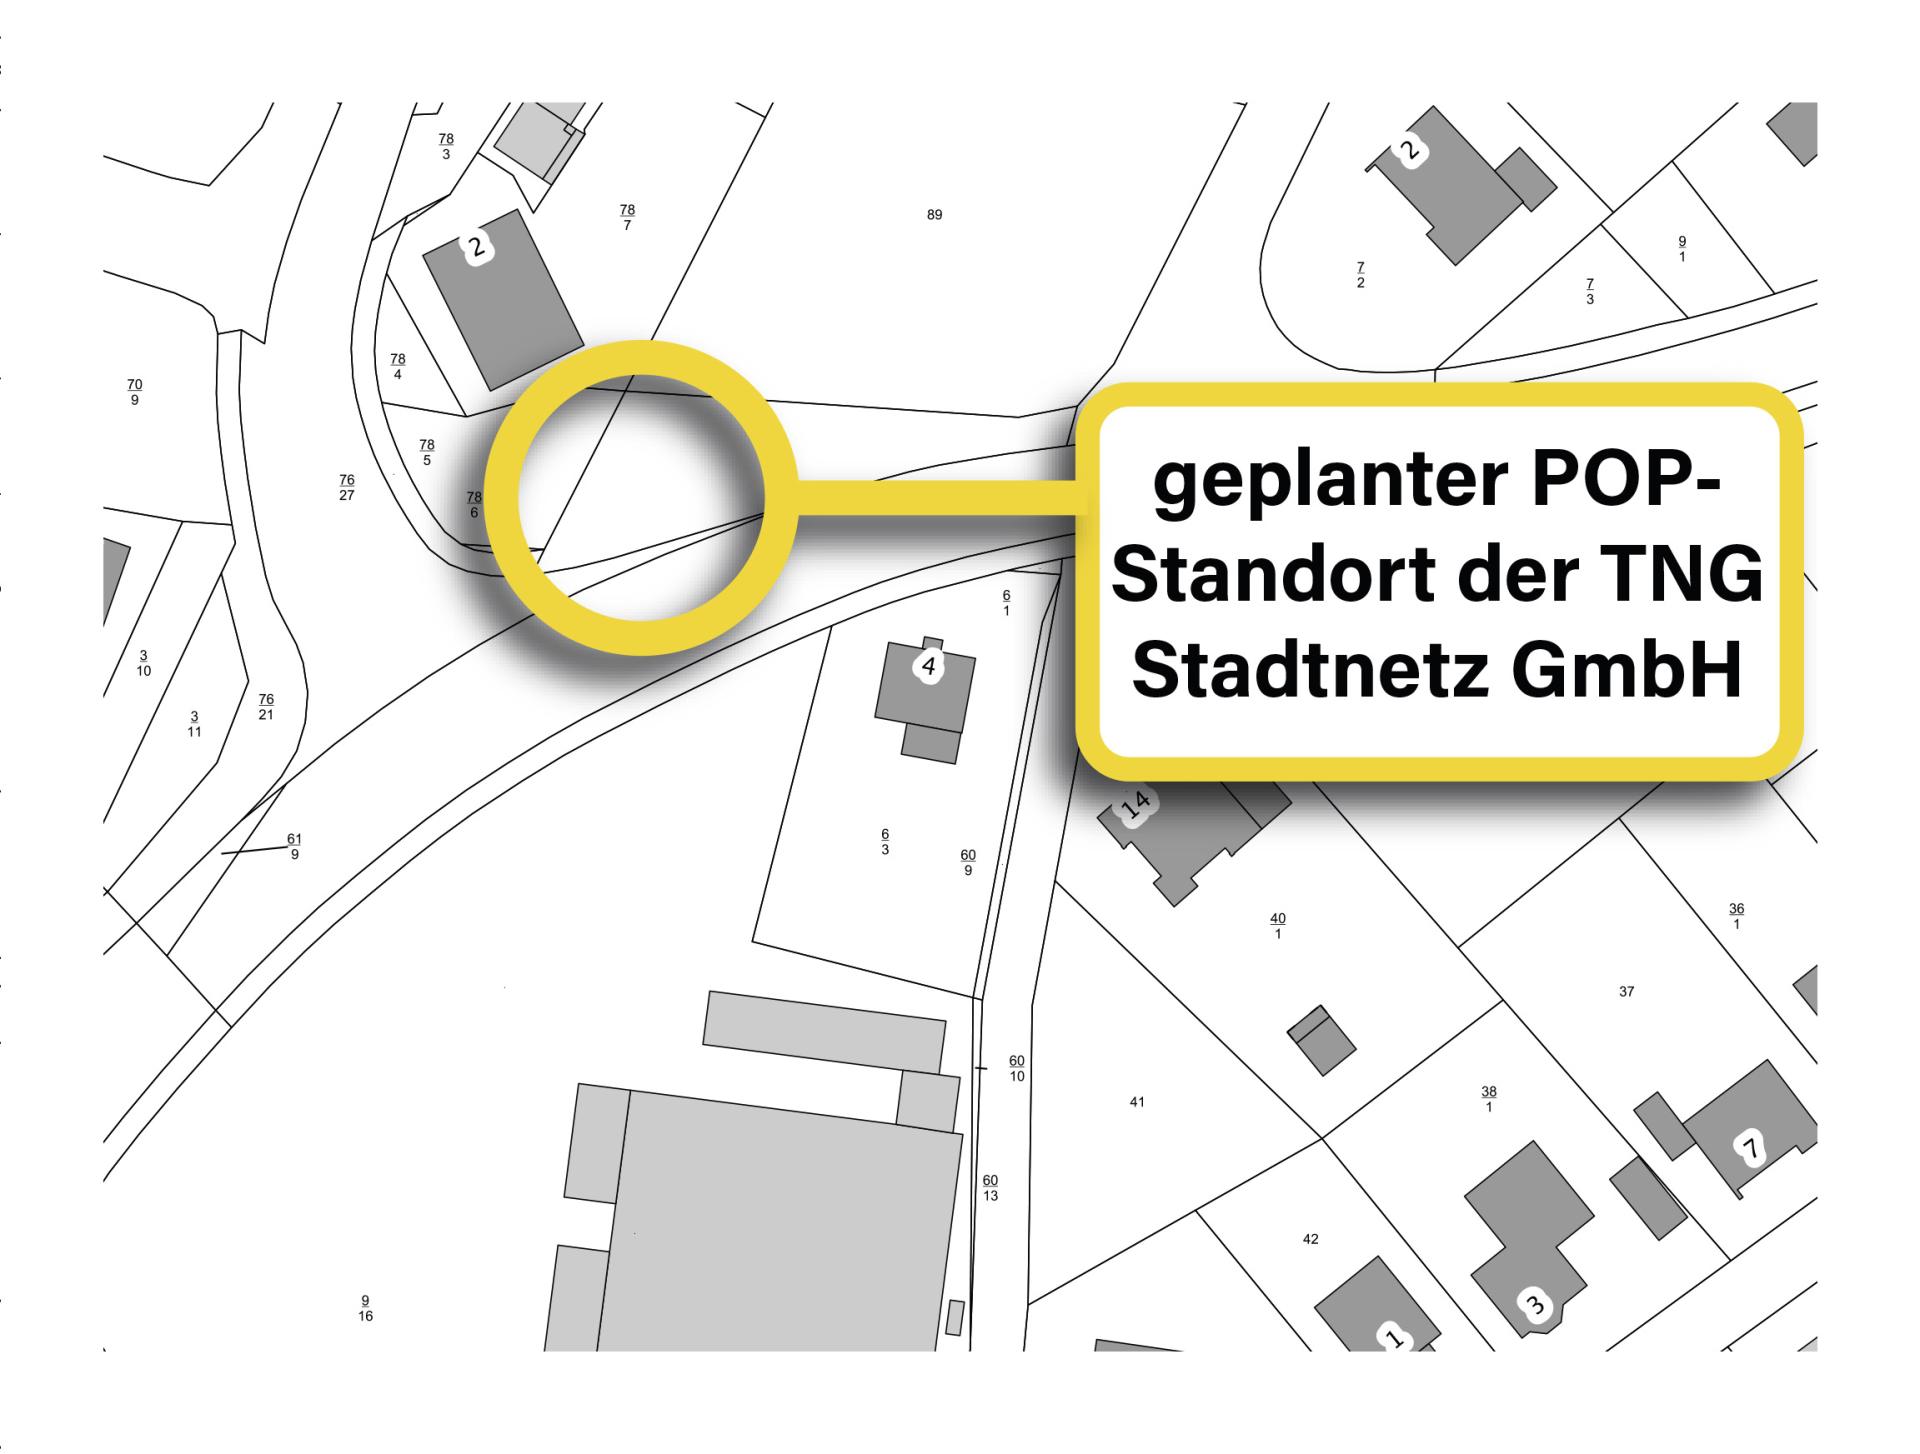 Abbildung 2: geplanter POP-Standort der TNG Stadtnetz GmbH in der Stadt Neukirchen